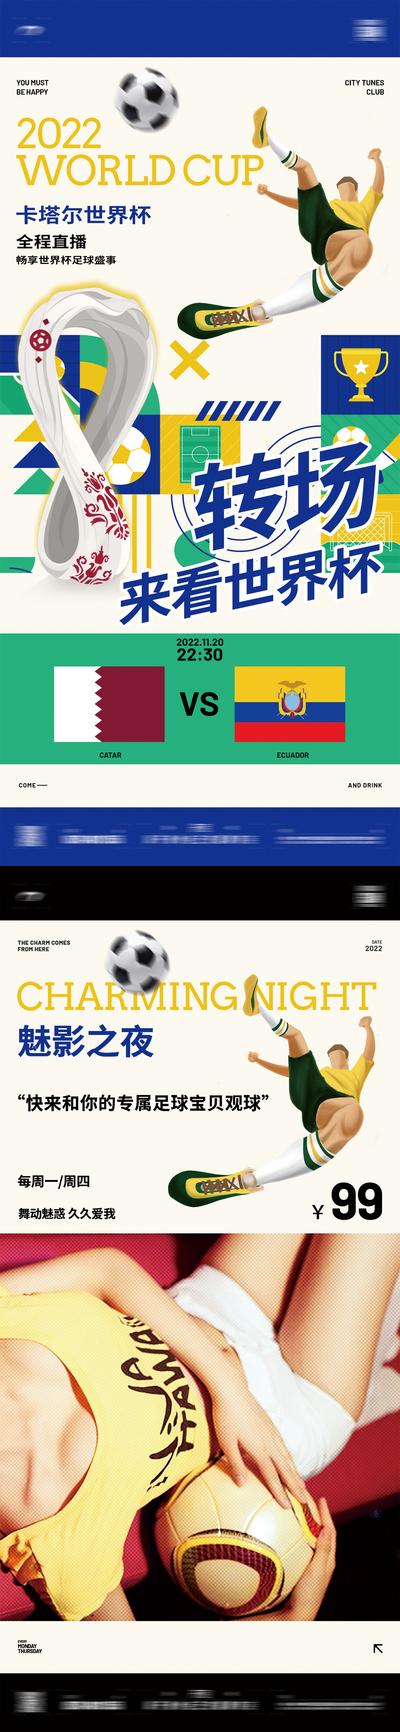 南门网 海报 酒吧 夜店 热点 世界杯 直播 订台 足球宝贝